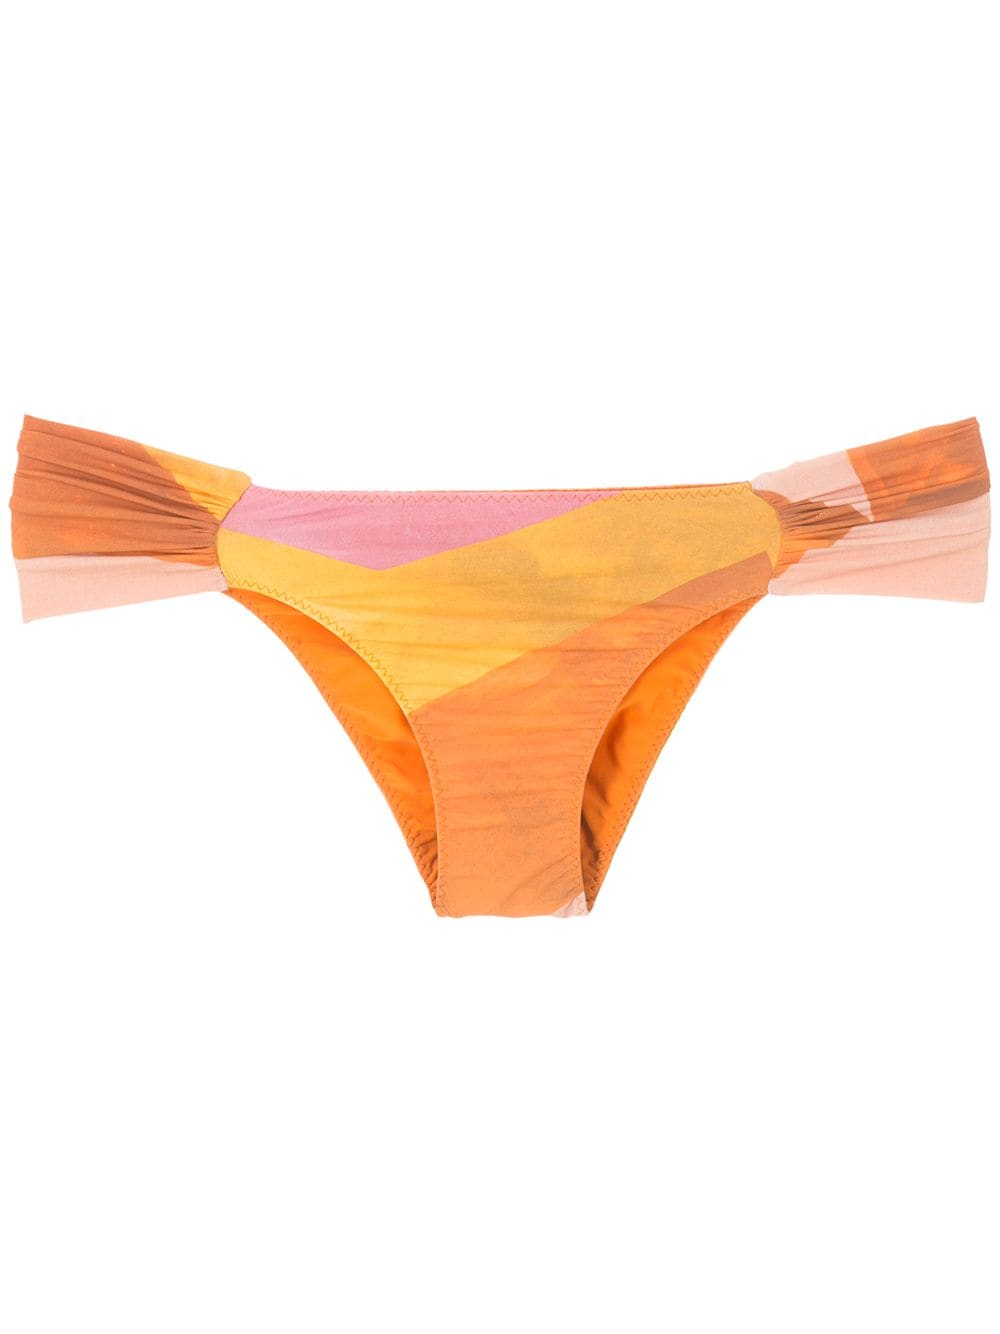 Clube Bossa Ricy bikini bottoms - Multicolour von Clube Bossa